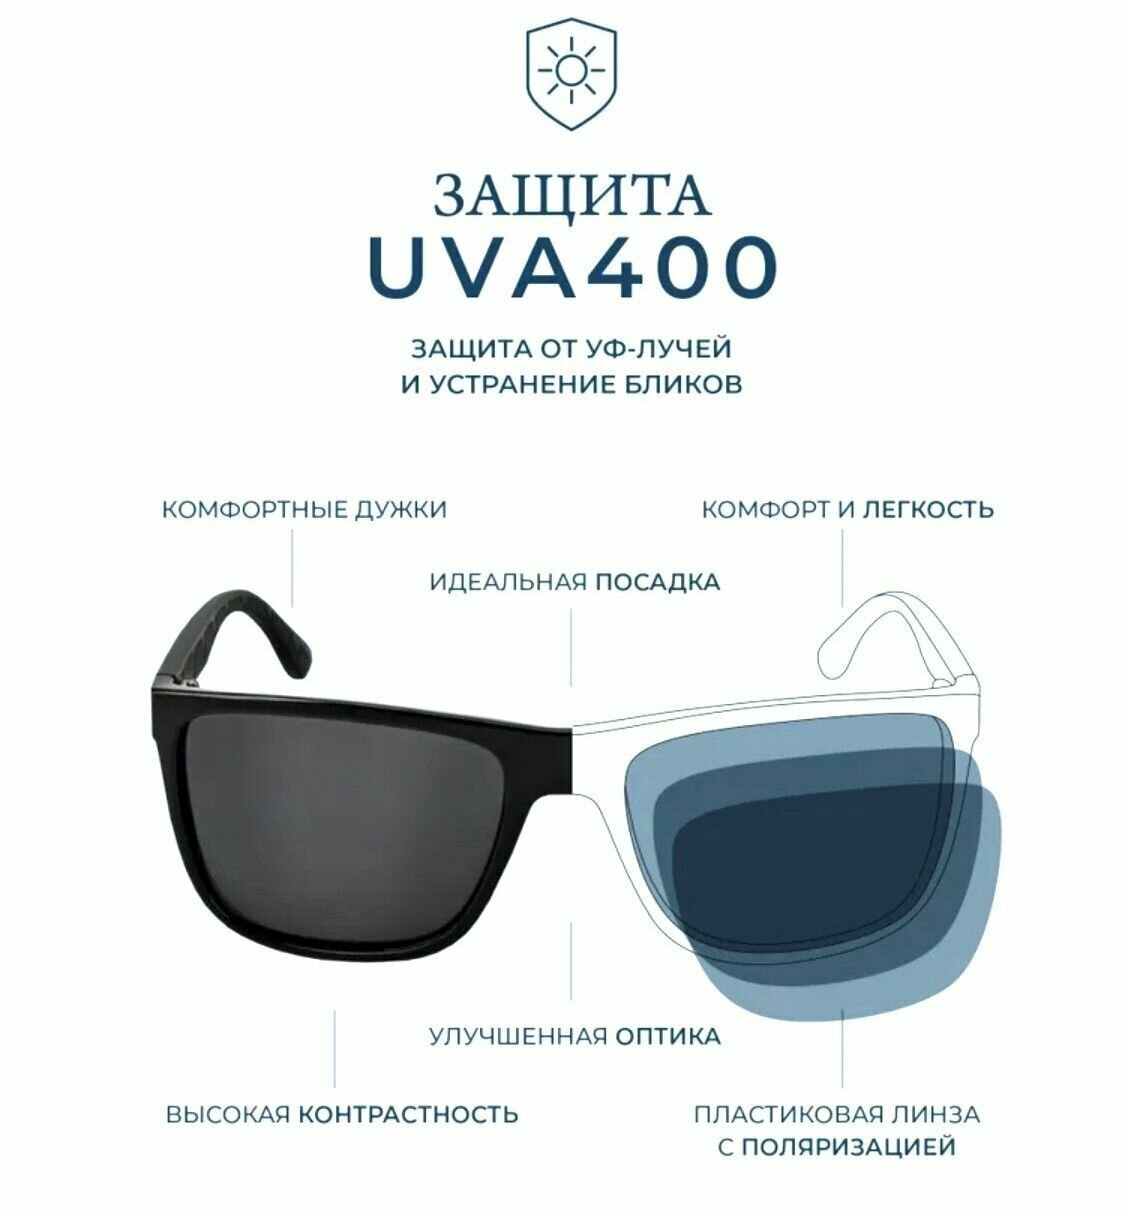 Солнцезащитные очки Matrix  Очки солнцезащитные Matrix Polarized ; с футляром